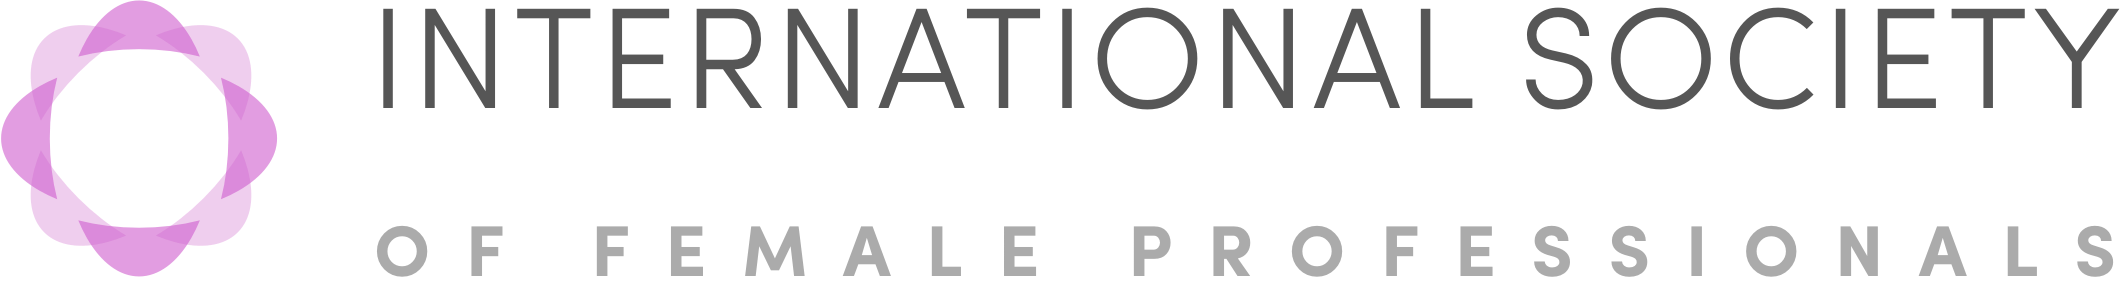 logo-theisfp